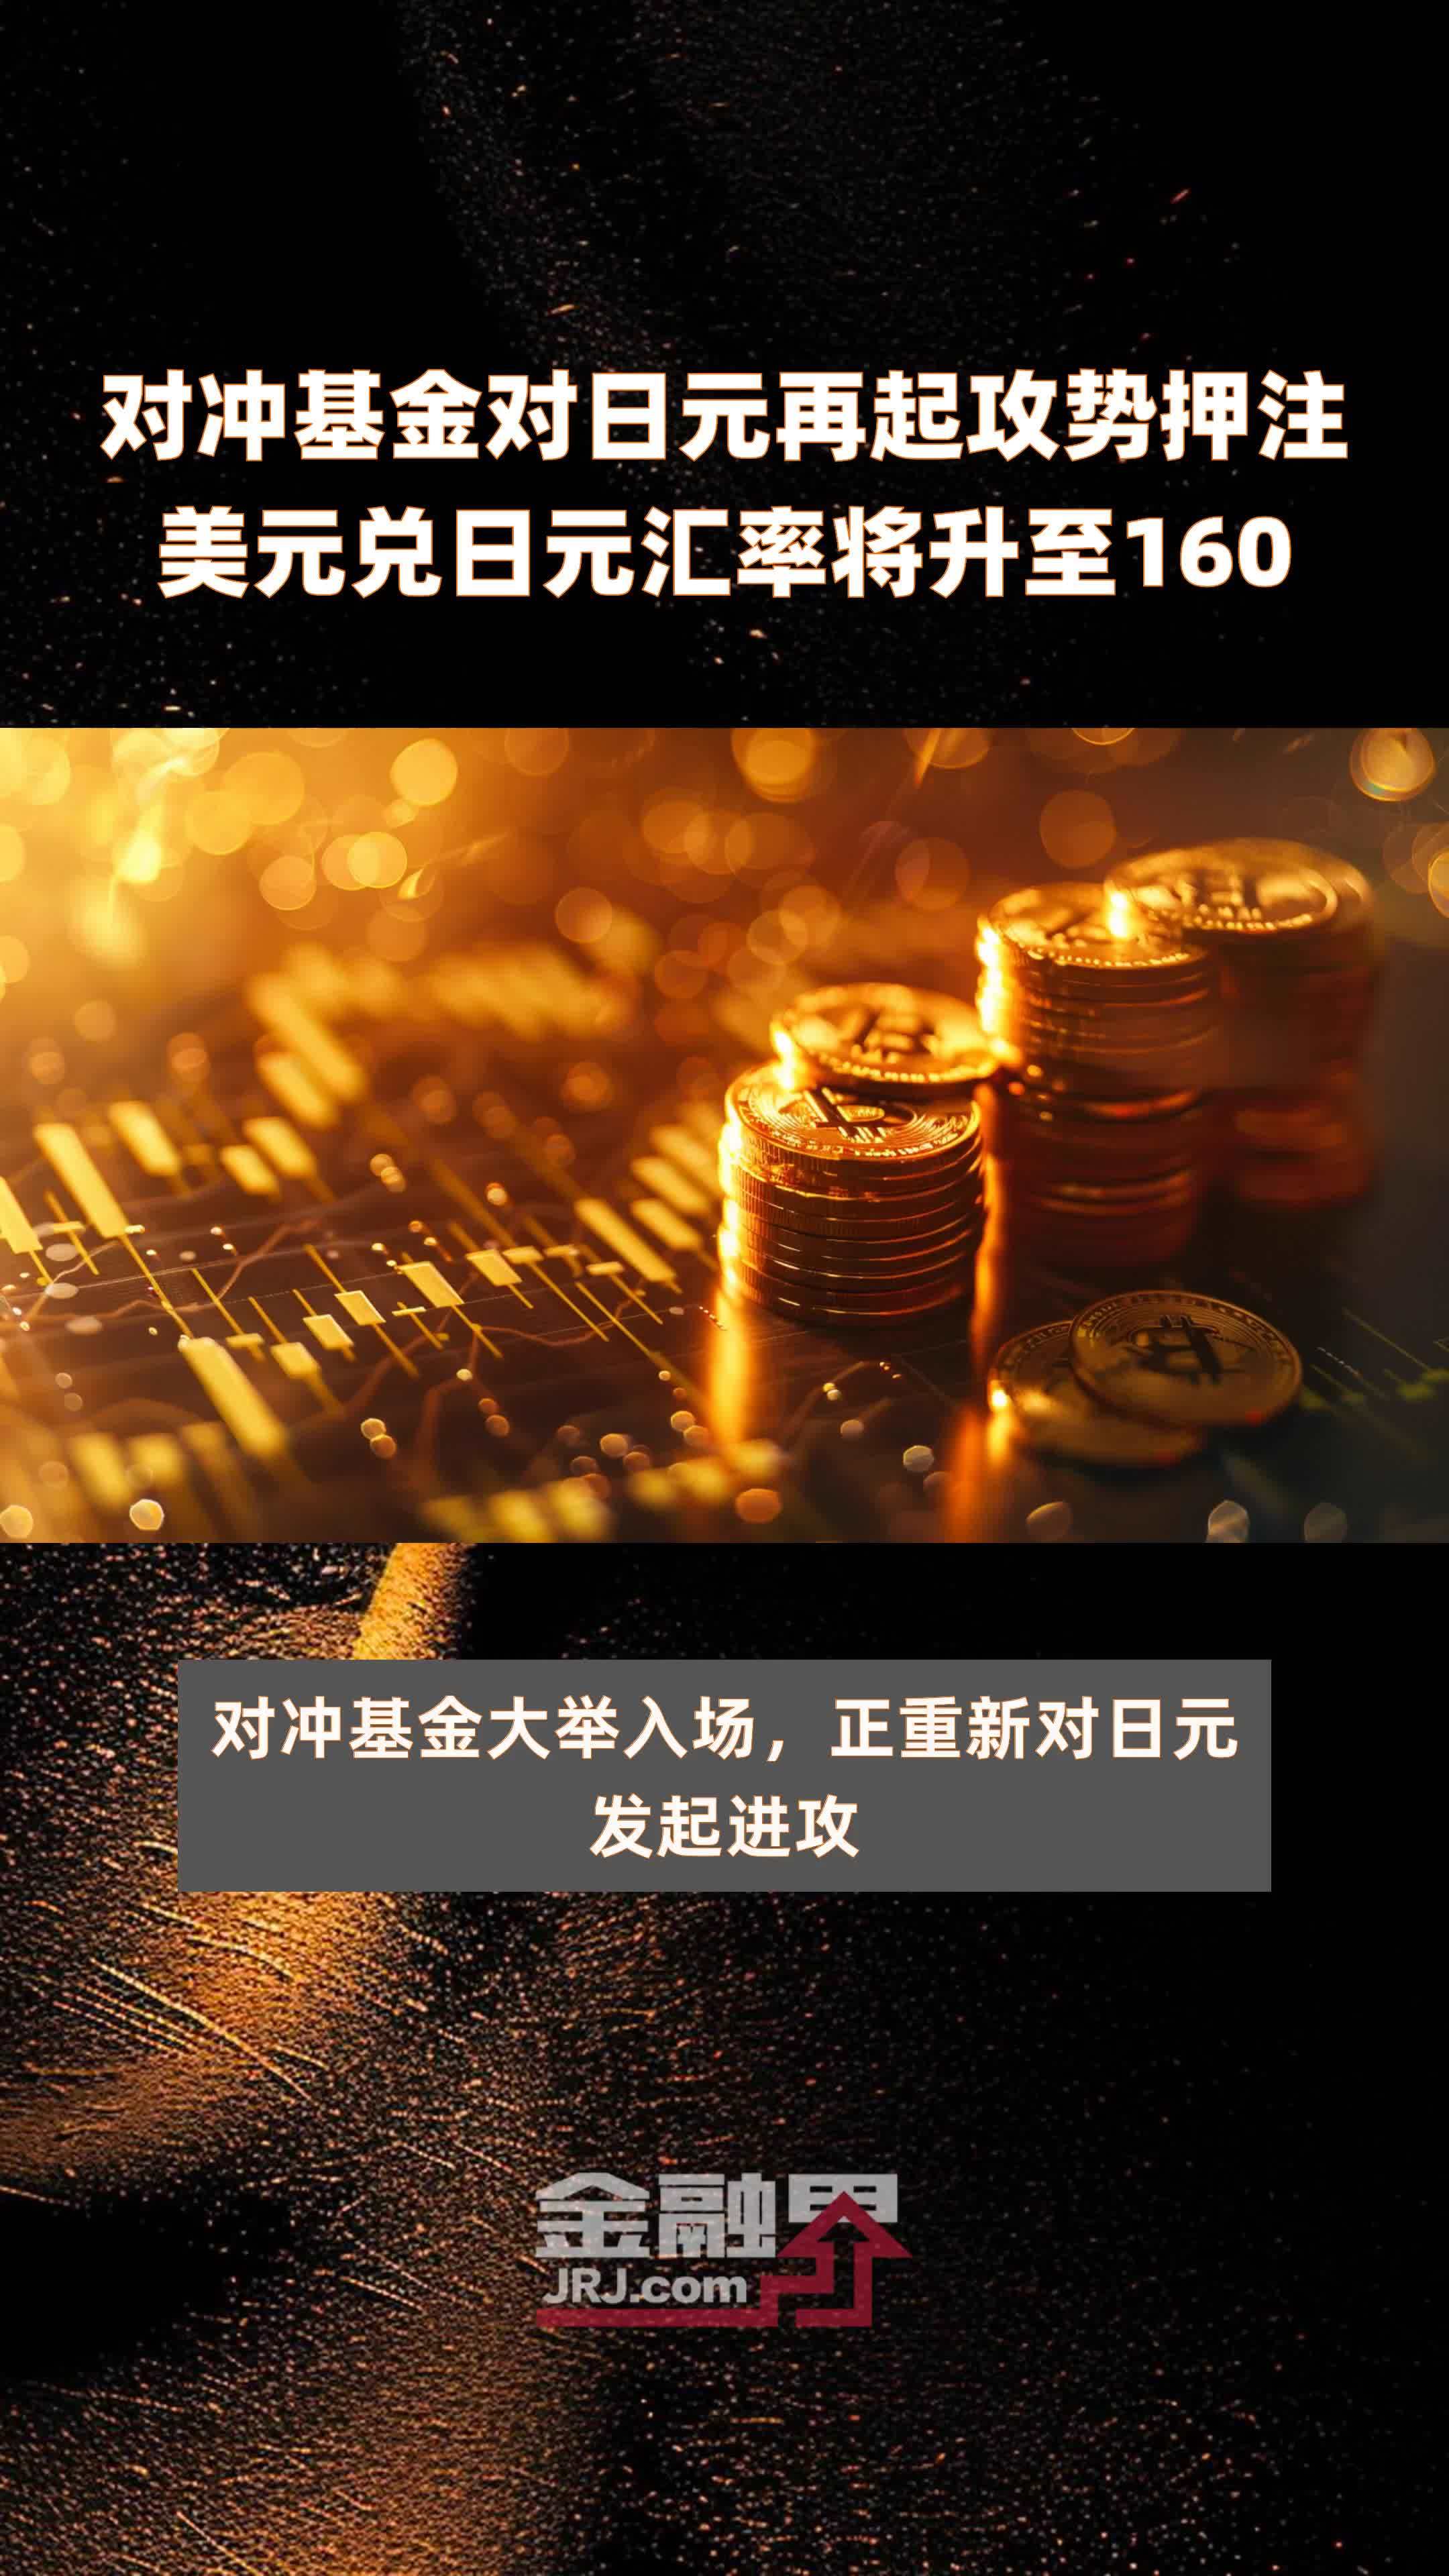 对冲基金对日元再起攻势押注美元兑日元汇率将升至160 |快报